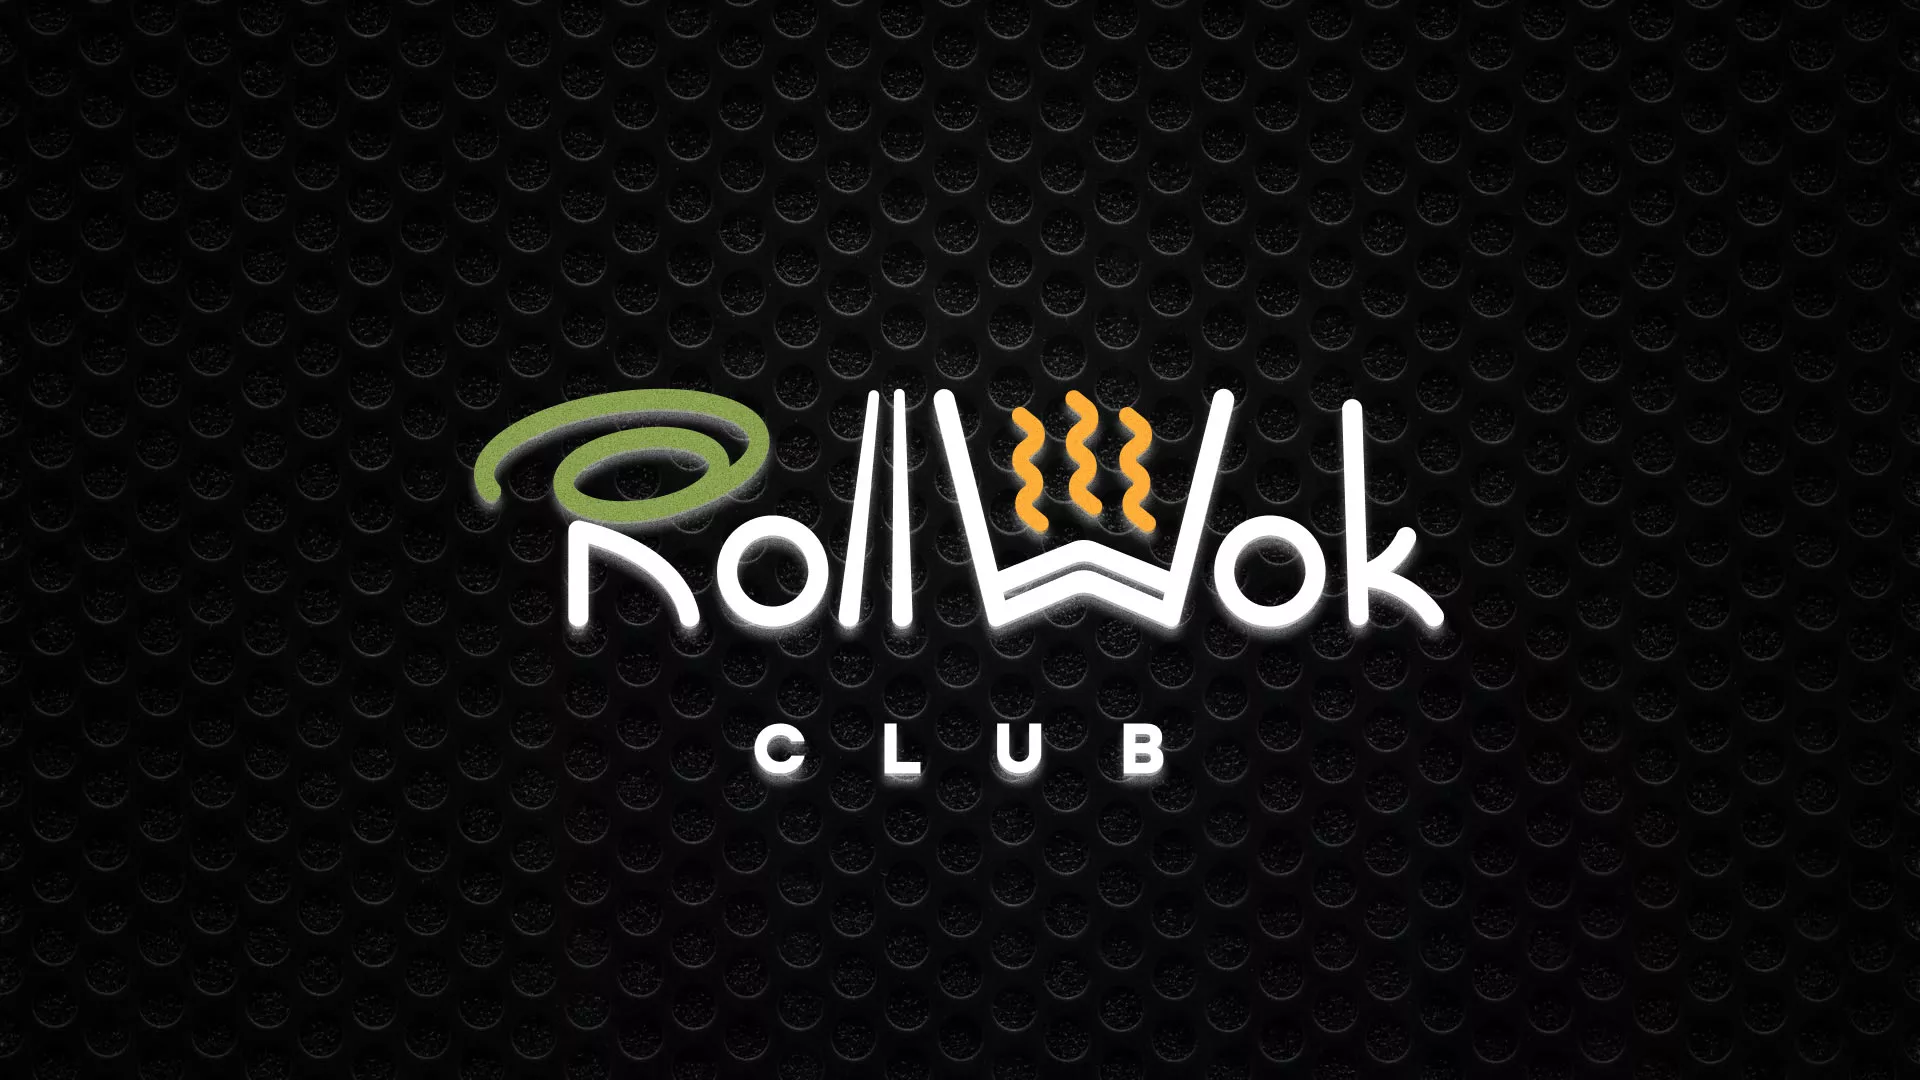 Брендирование торговых точек суши-бара «Roll Wok Club» в Судже